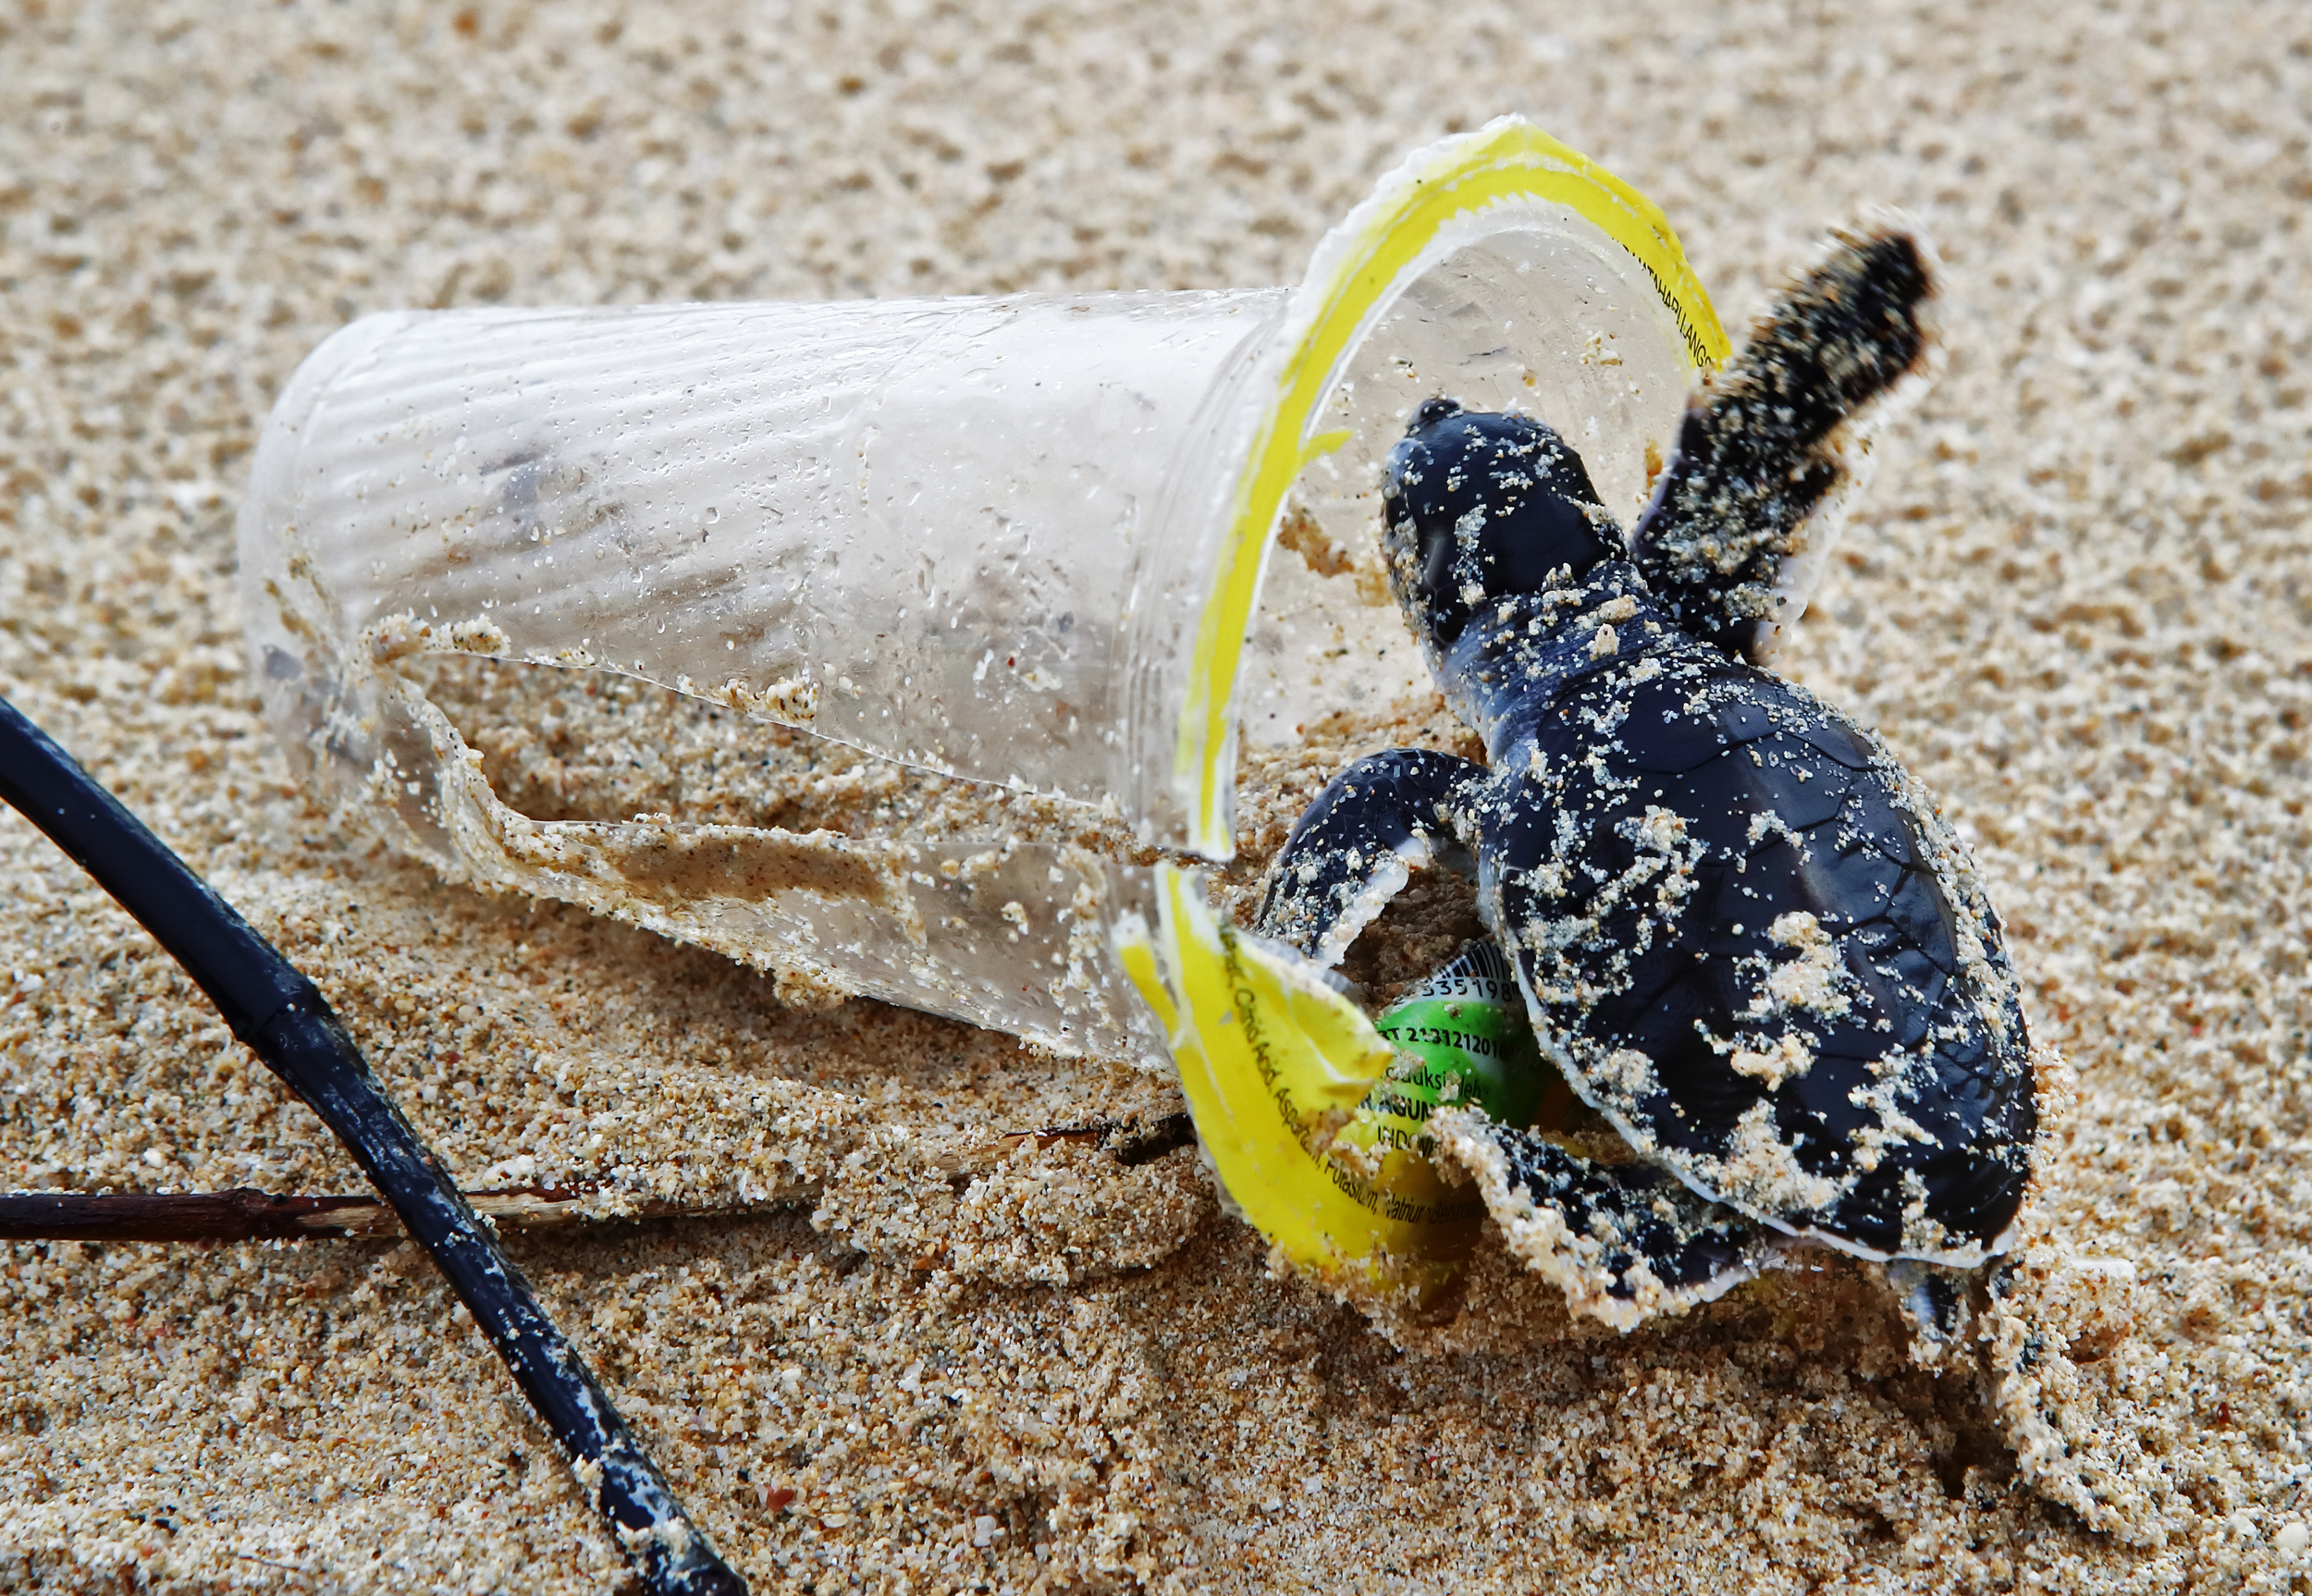 塑膠食品包裝為最大宗的海洋廢棄物，不僅破壞環境與自然生態，更在裂解成碎片後以微塑膠的形式繼續存在於地球上。